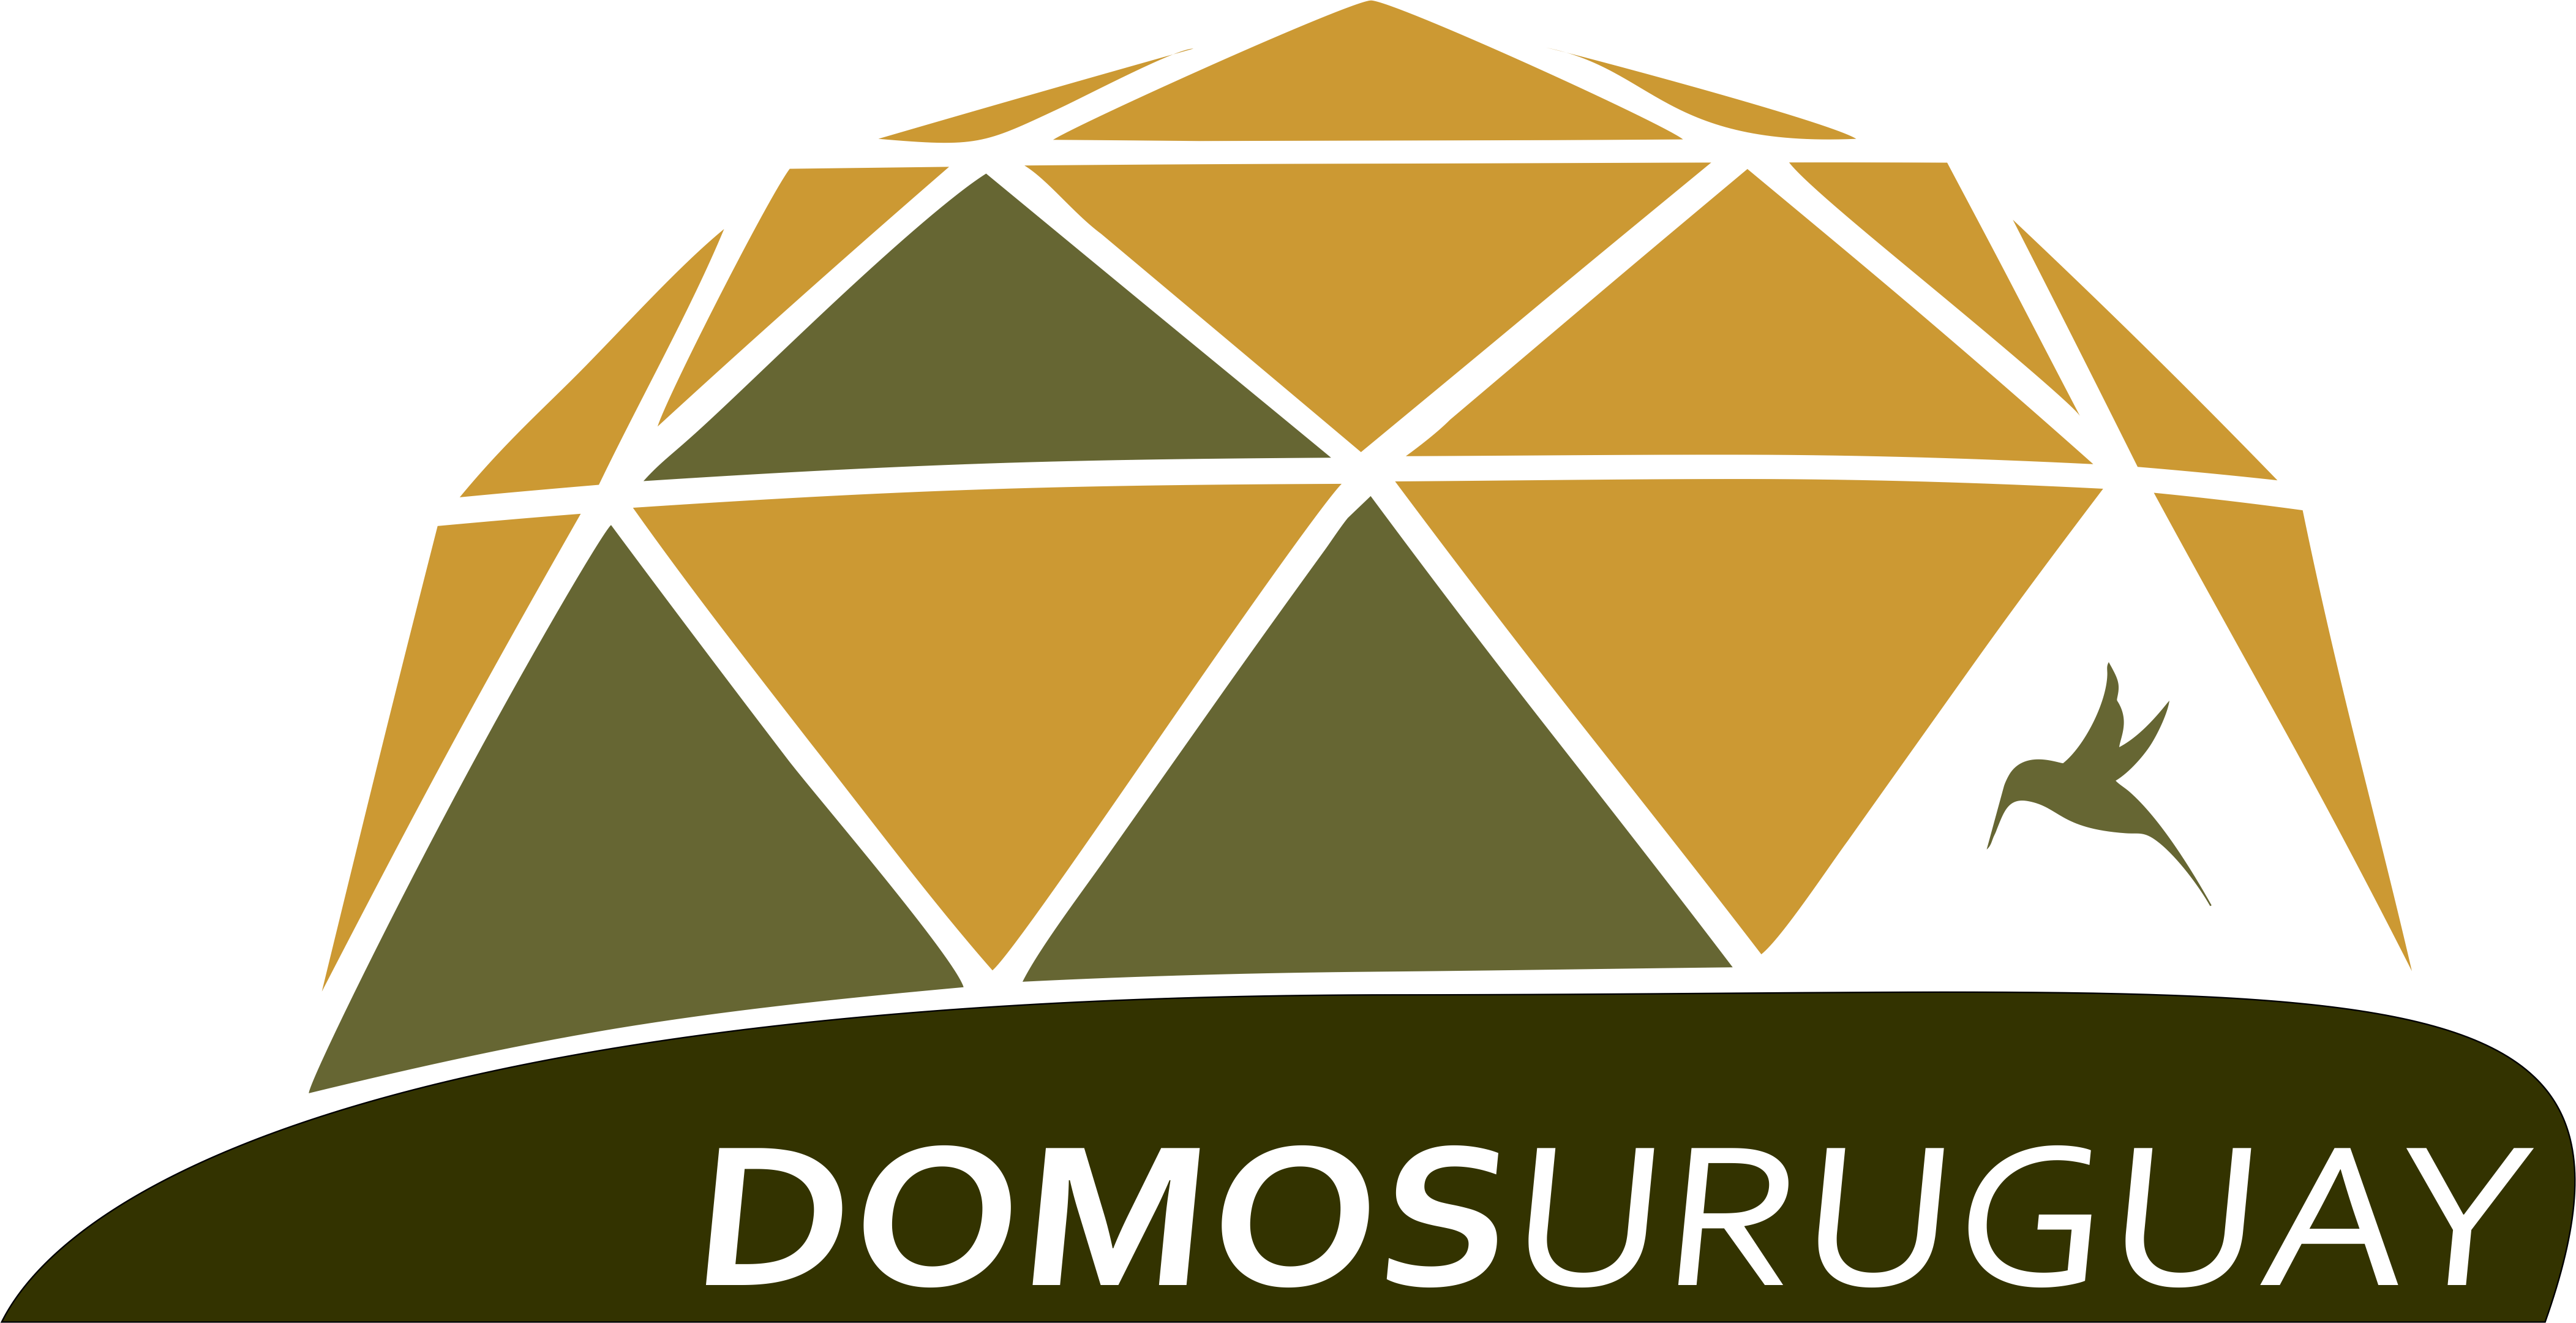 Domos Uruguay – Casas prefabricadas – Domos geodésicos